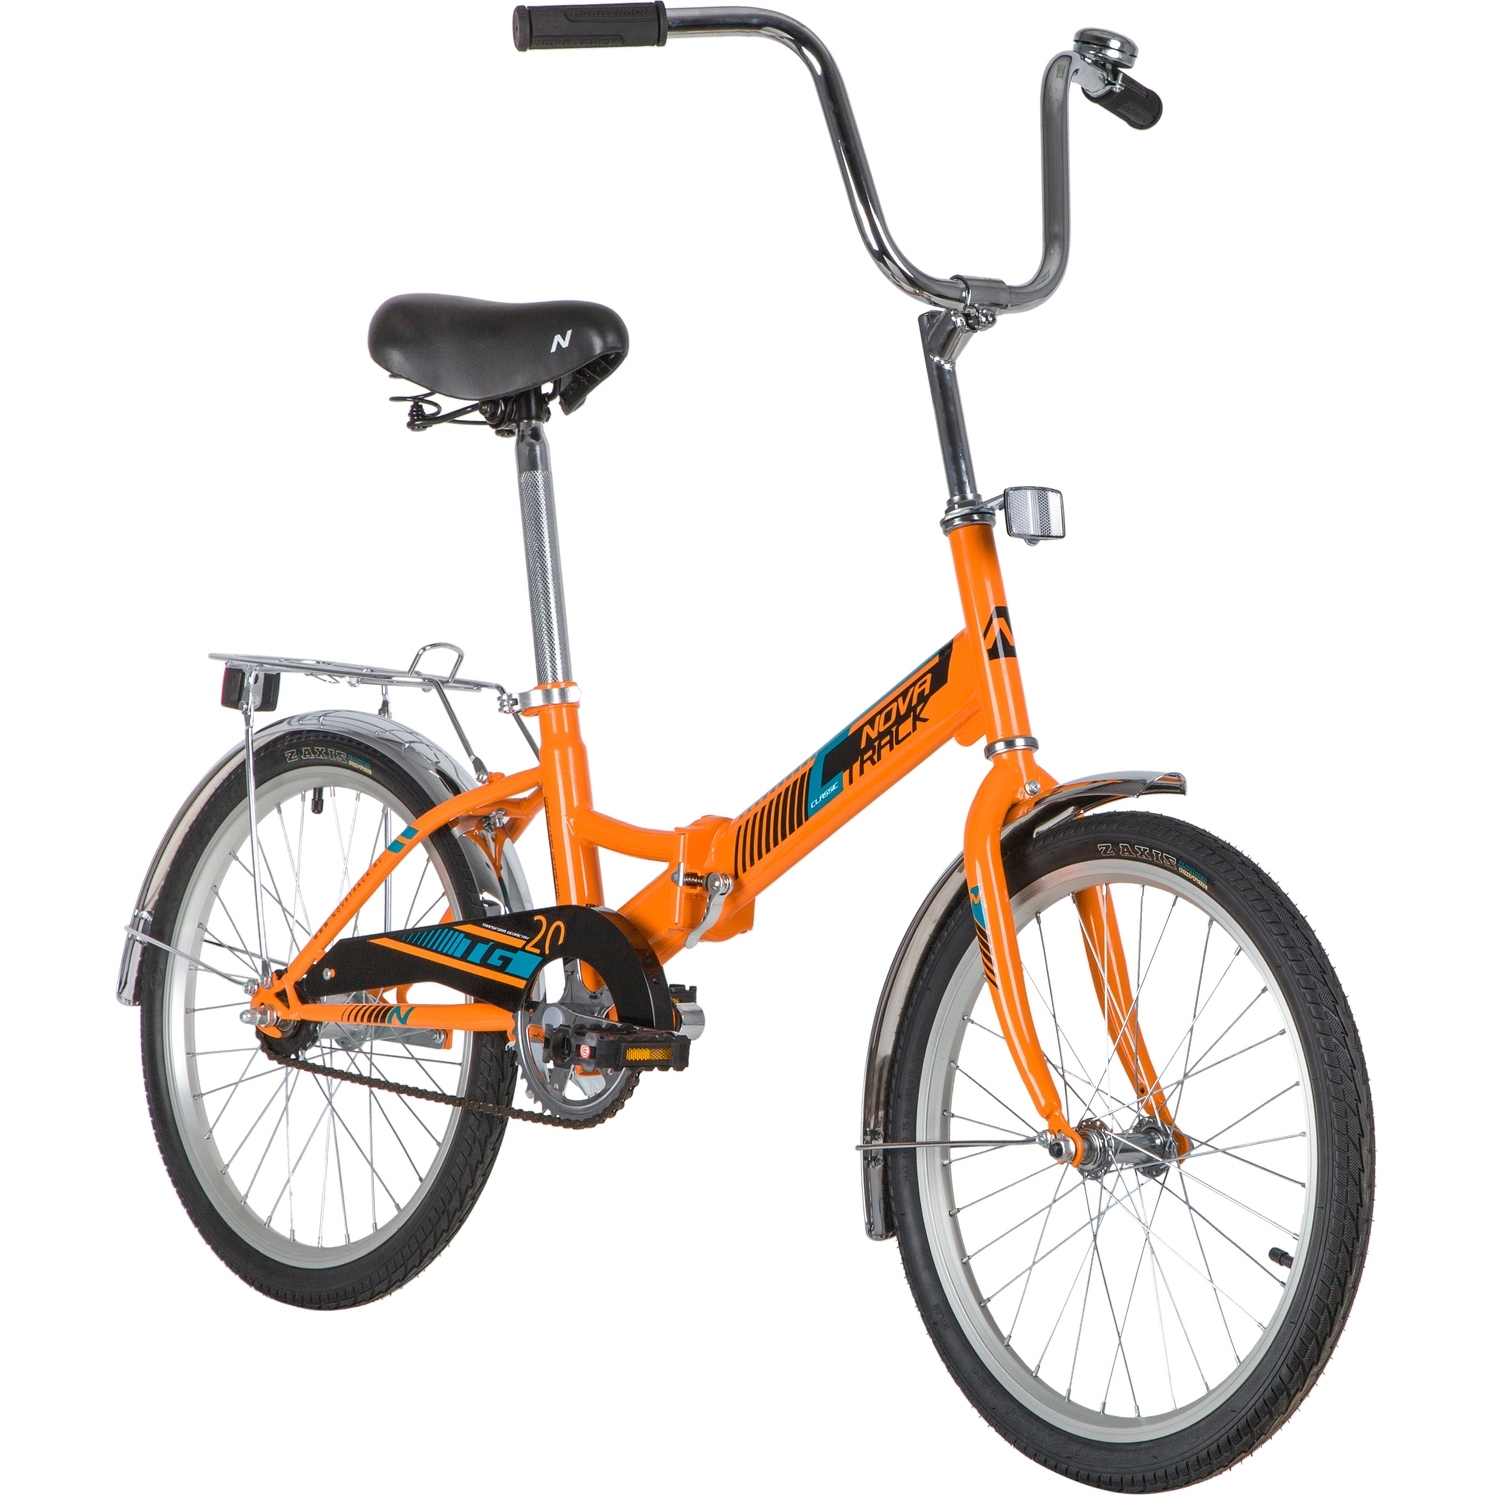 Складной велосипед Novatrack TG-20 Classic 1sp., год 2020, цвет Оранжевый